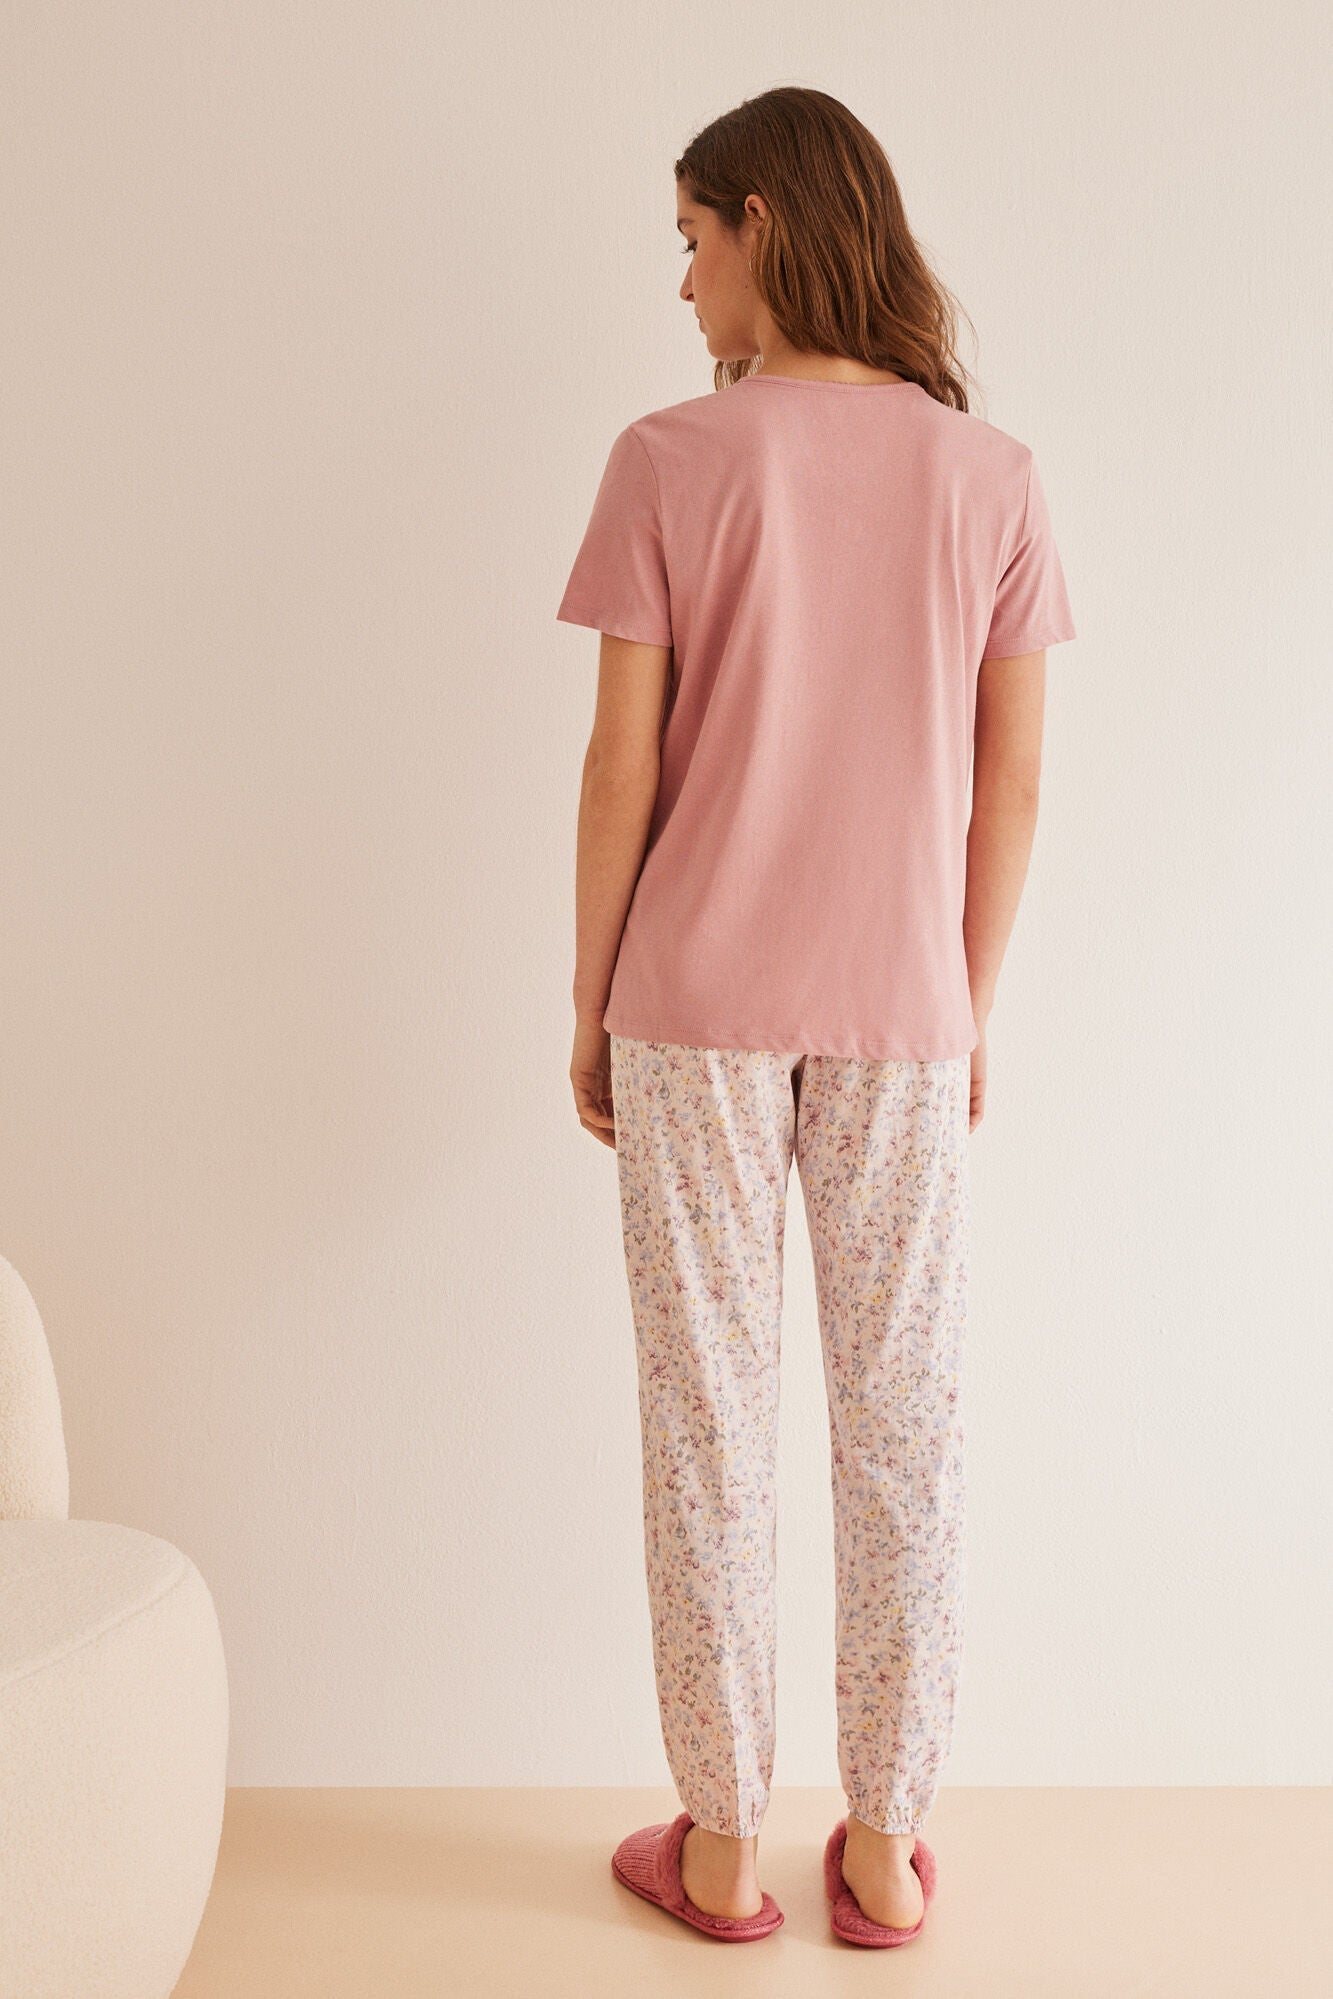 Long pyjamas with flowers